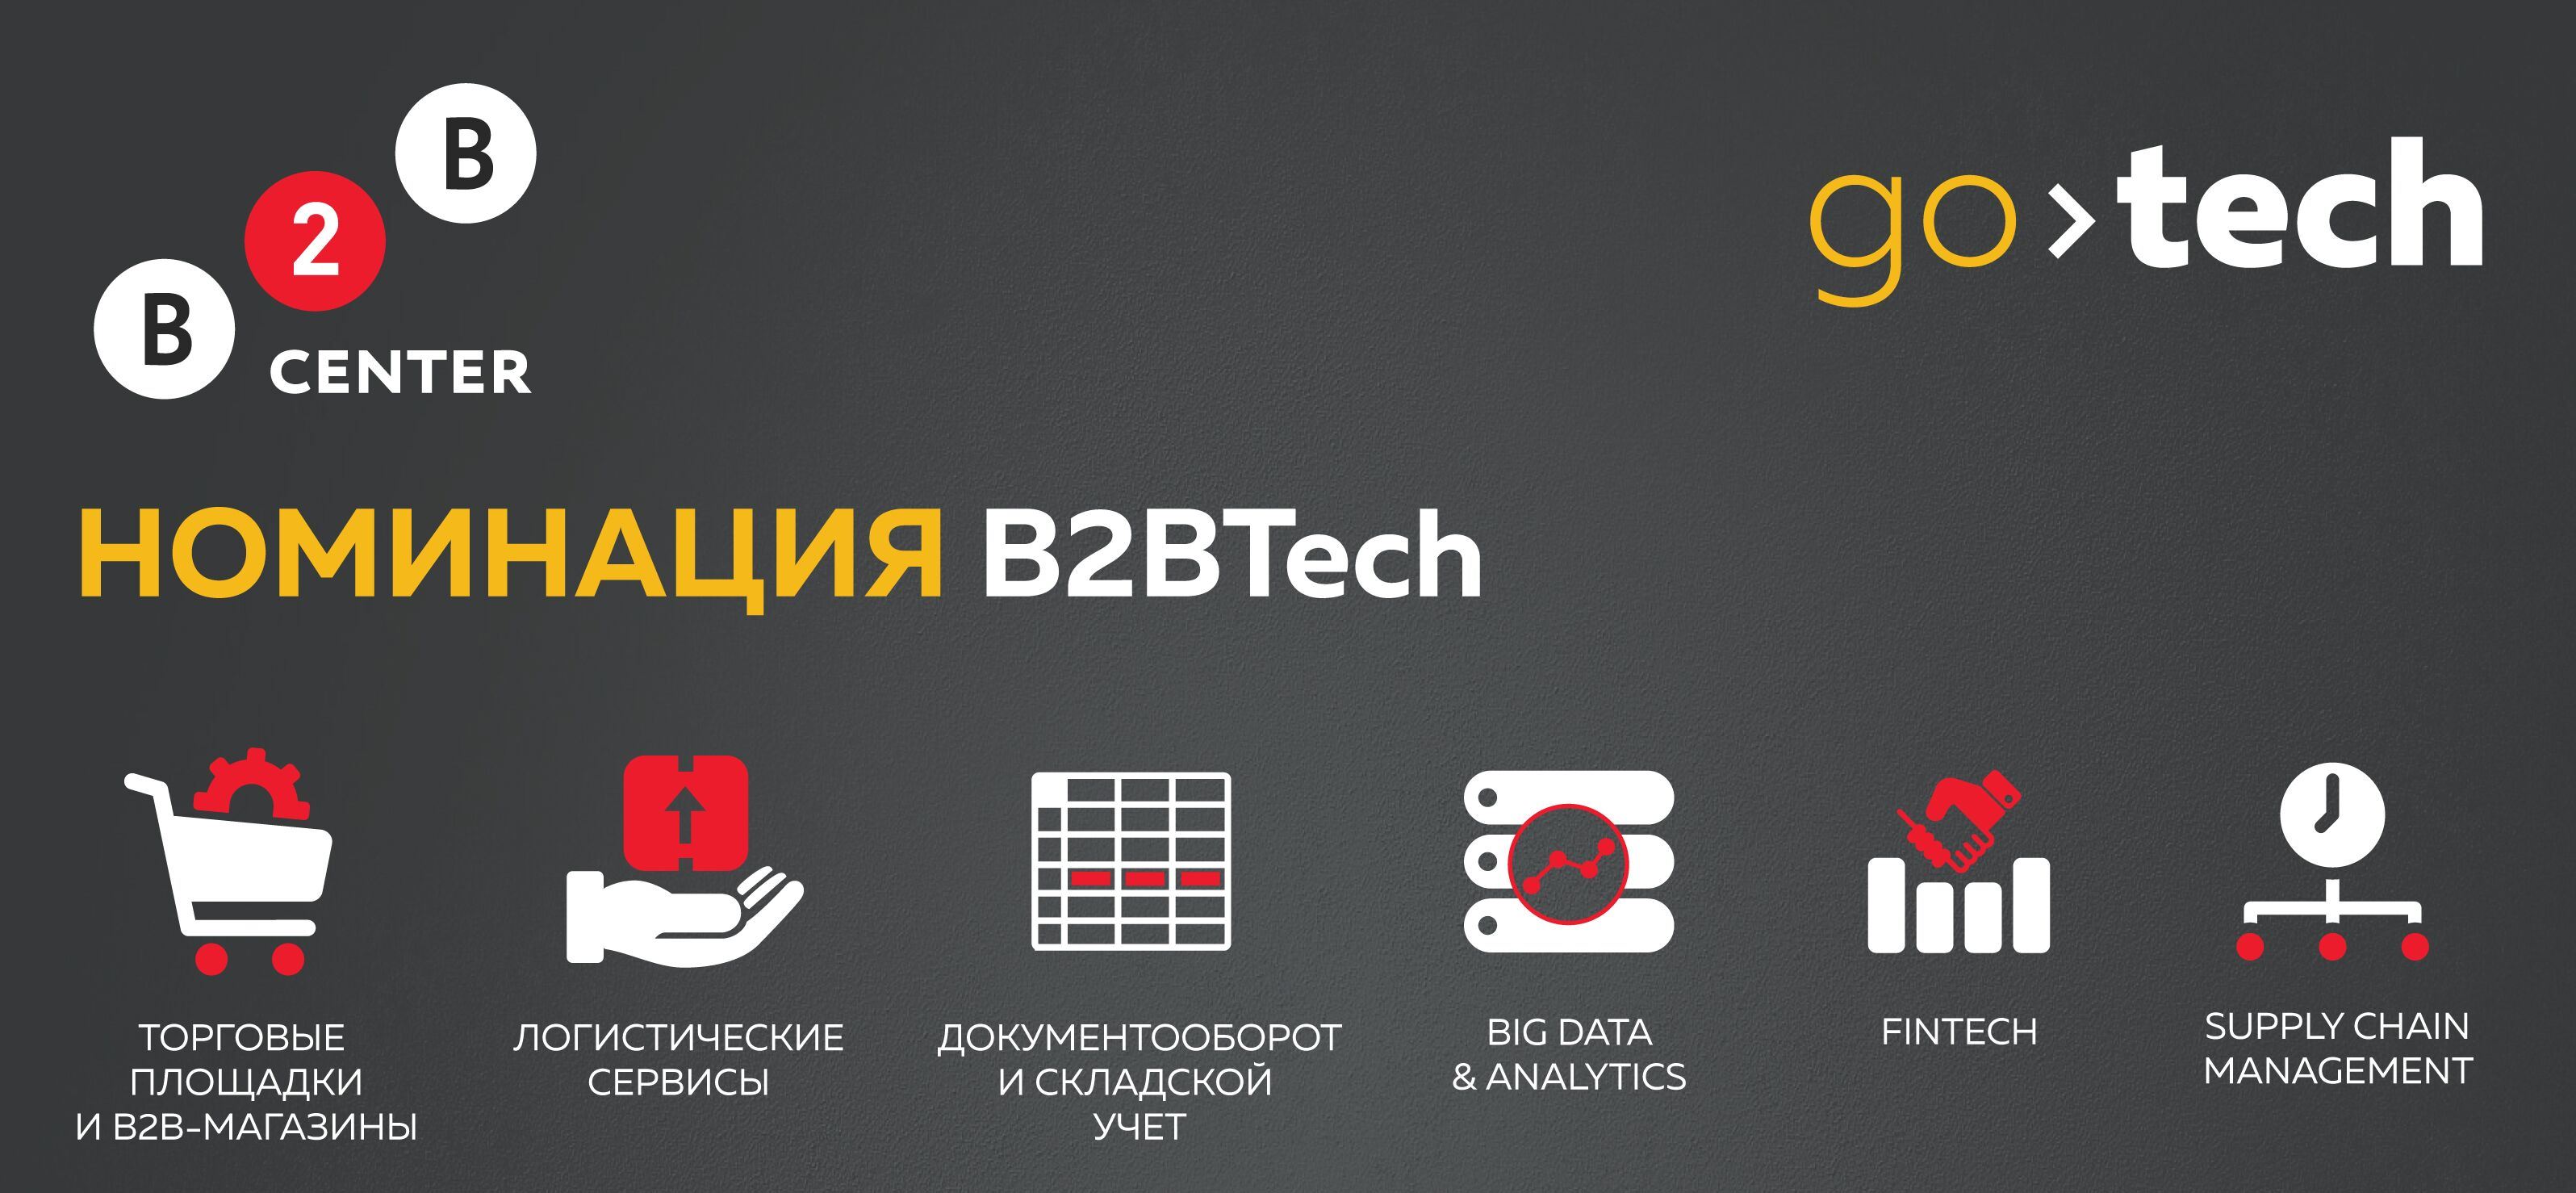 B2BTech – новая номинация GoTech 2016